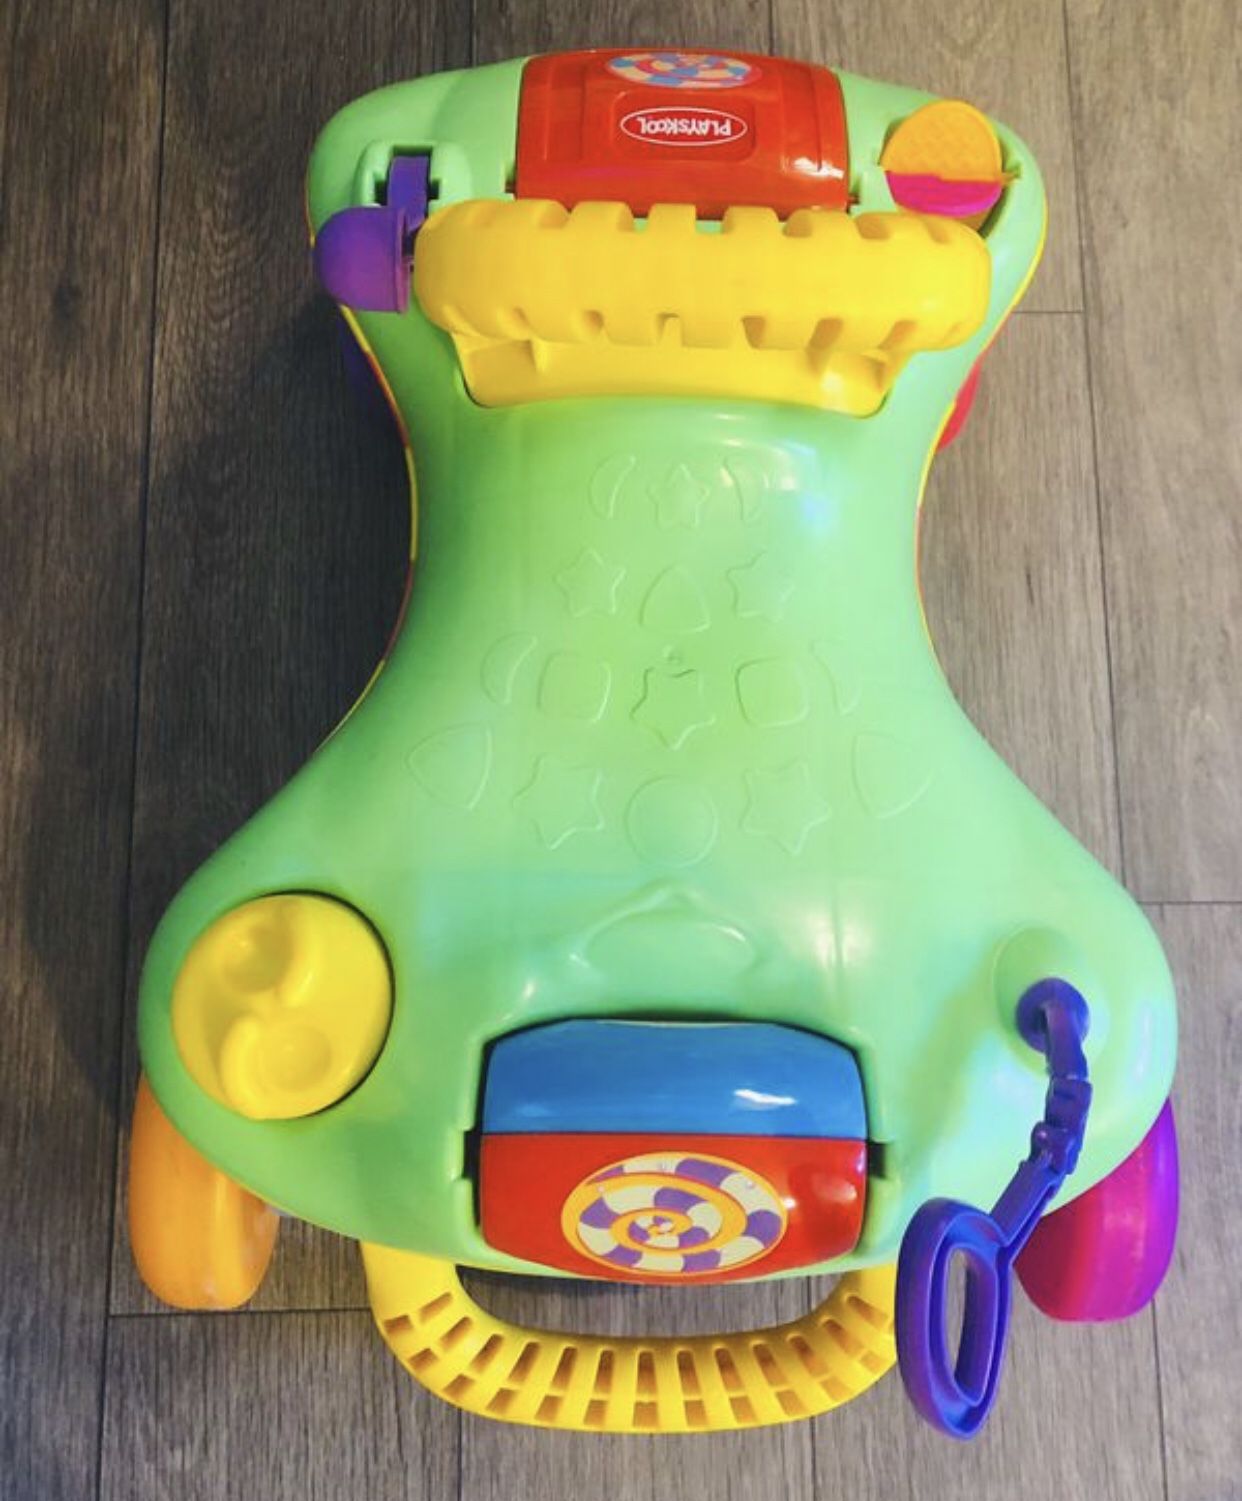 Playschool Baby Toy Car, LIKE NEW